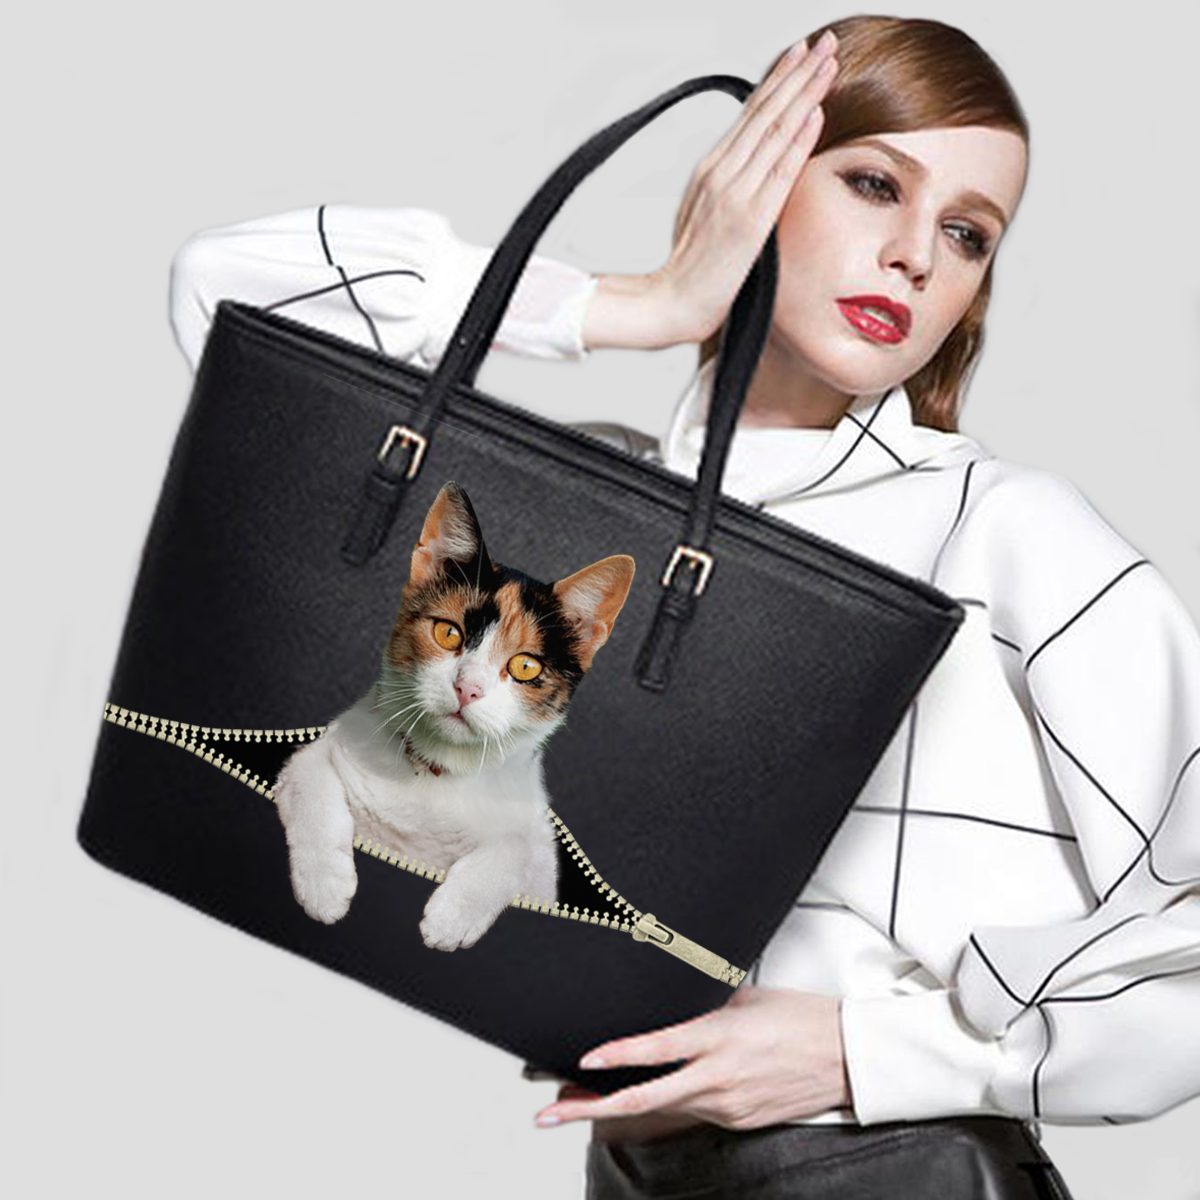 British Shorthair Cat Tote Bag V3